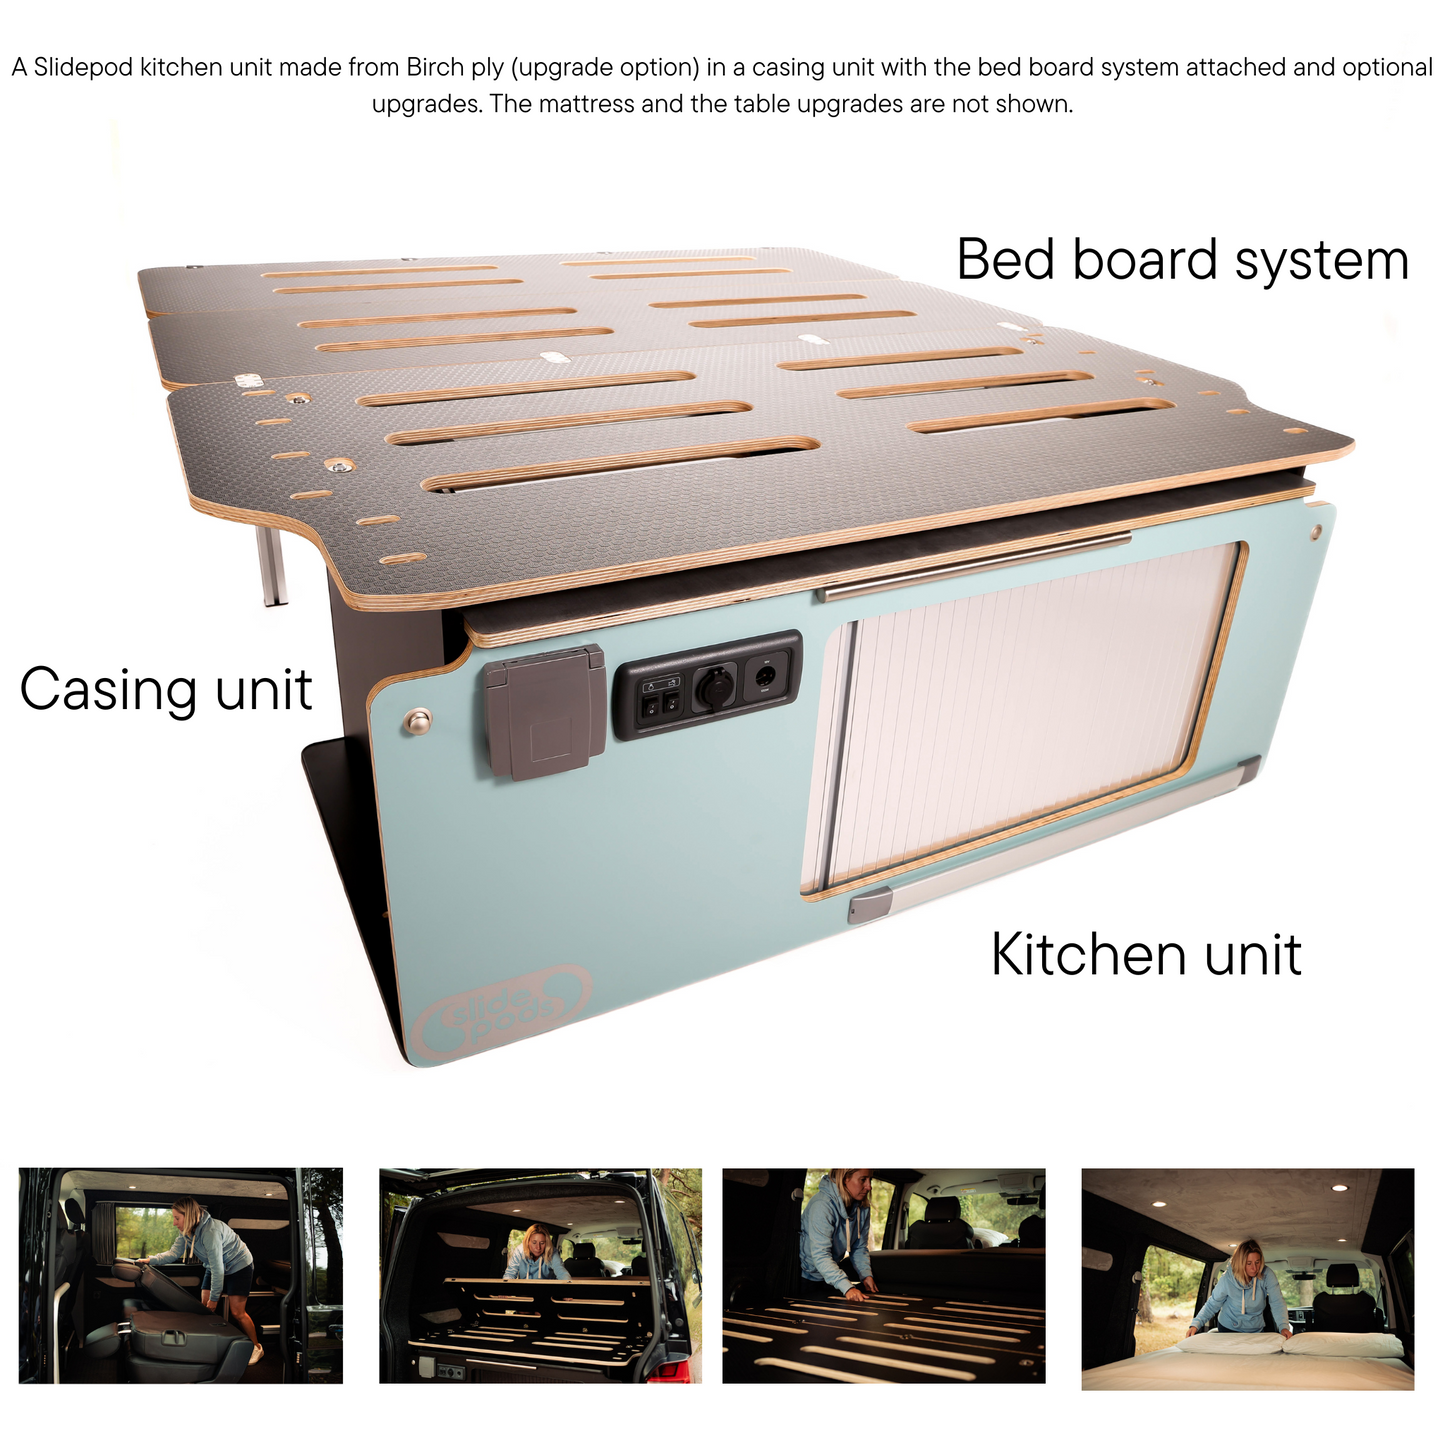 VW camping kitchen pod